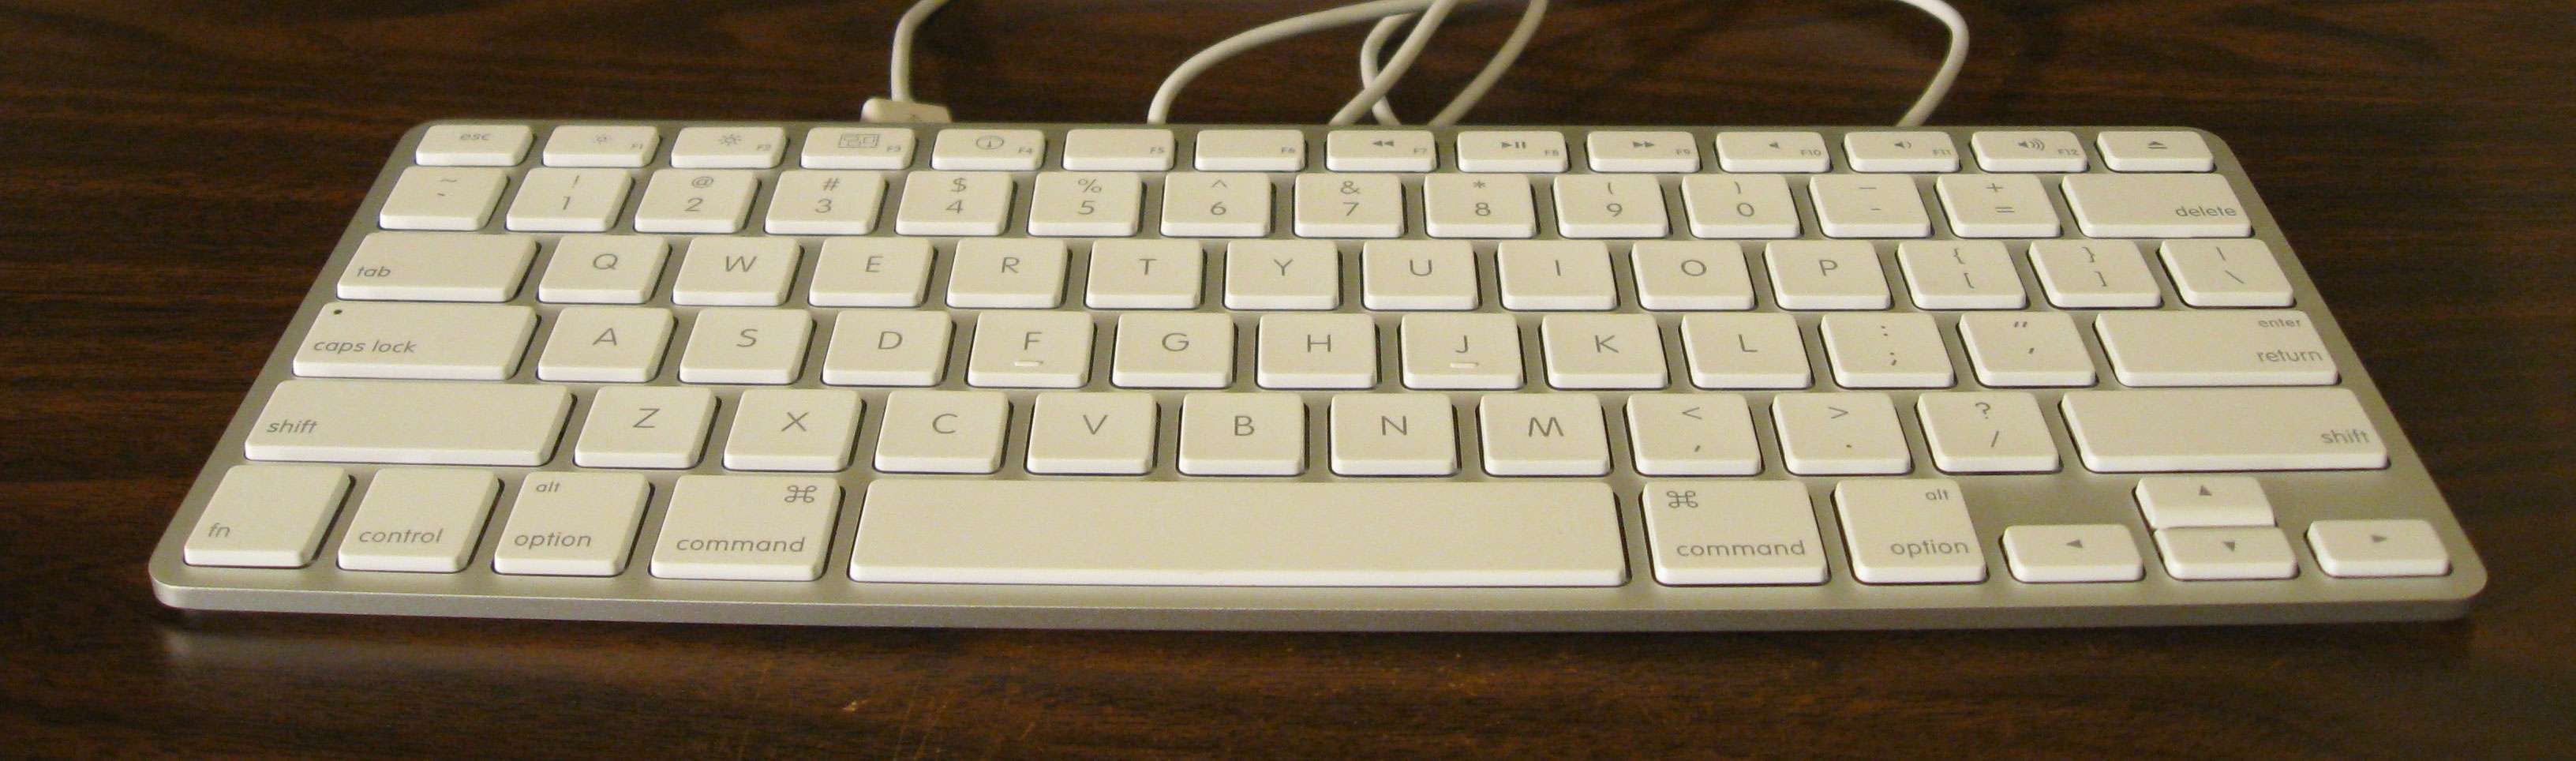 Acer Wireless Keyboard Kg 0917 Drivers